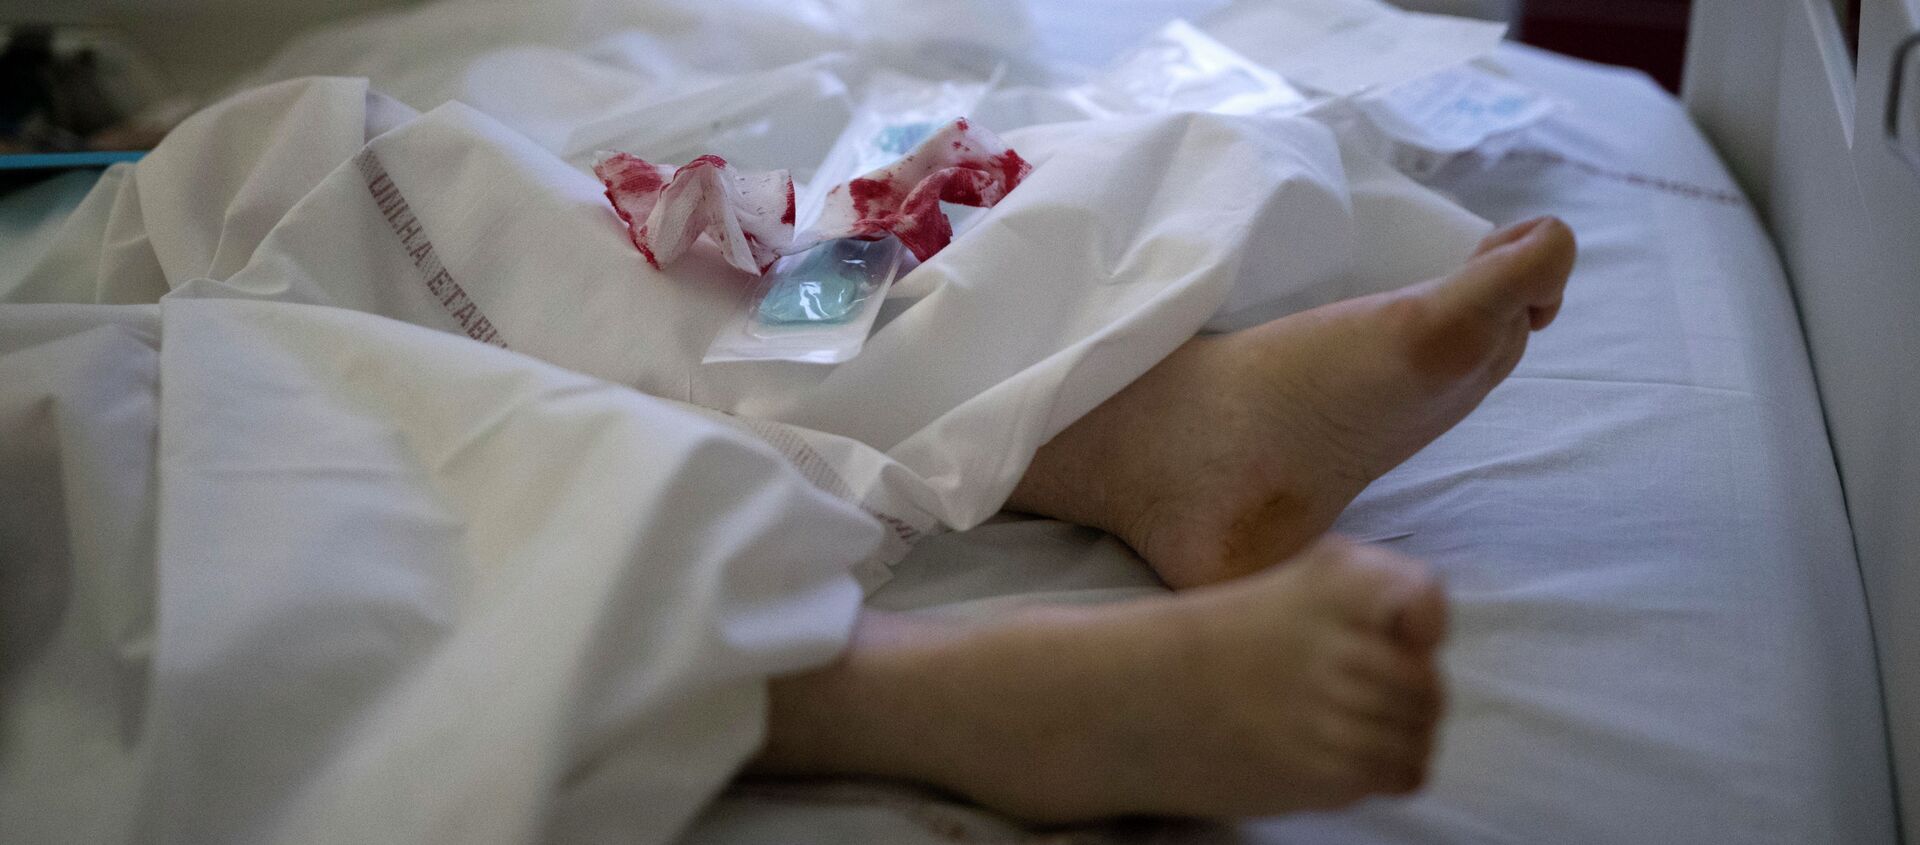 Окровавленные бинты на постели пациента палаты интенсивной терапии в больнице с коронавирусом  - Sputnik Казахстан, 1920, 17.03.2021